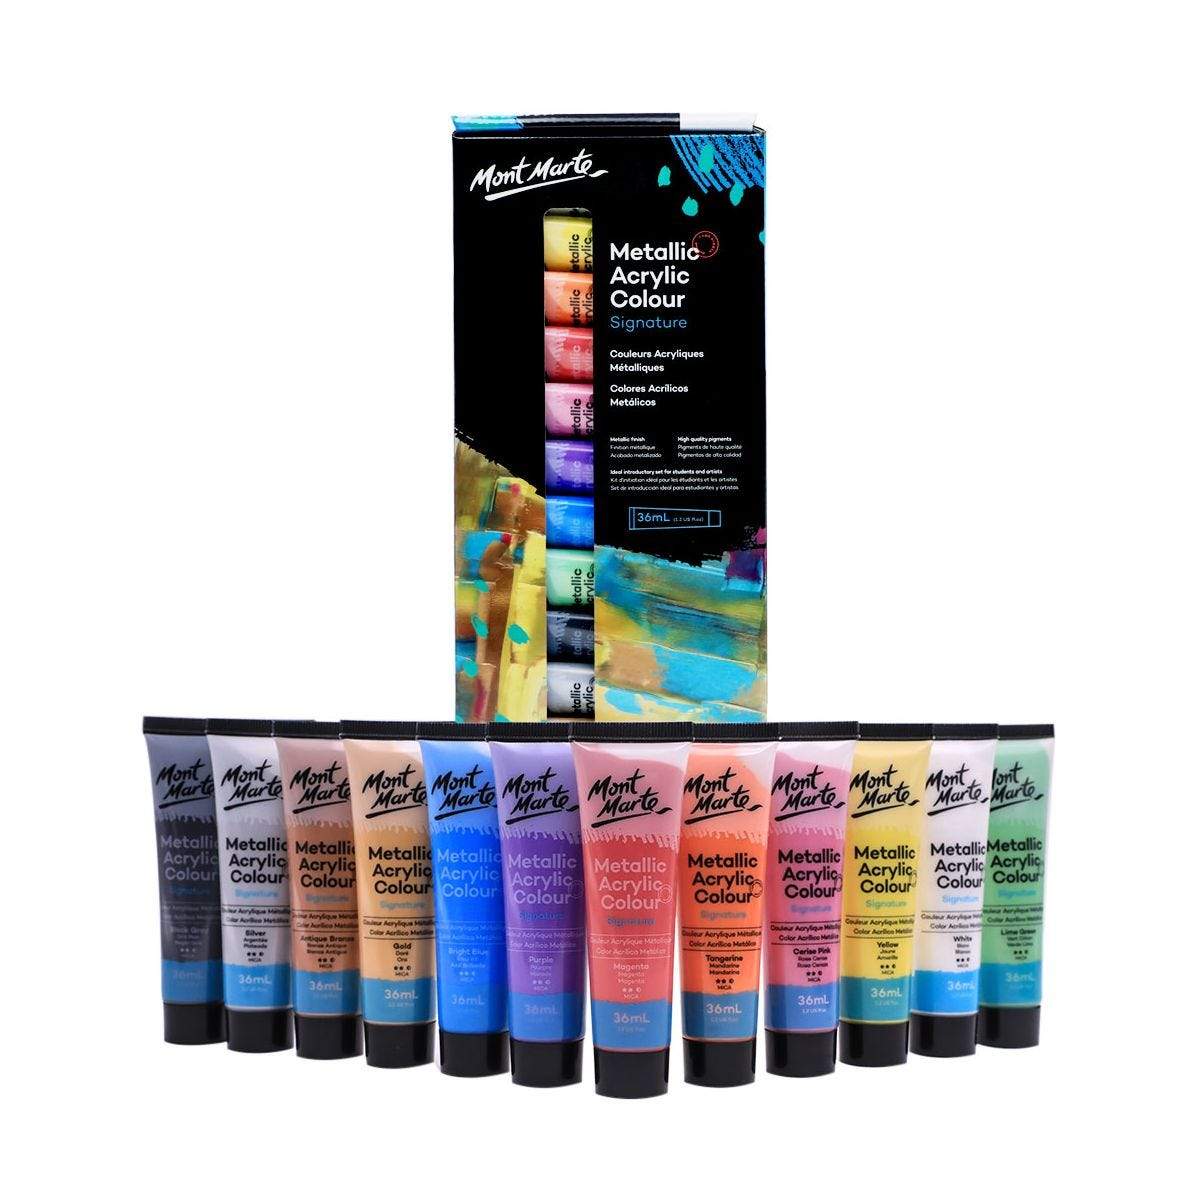 MONT MARTE Acrylic Colour Pastel Paint Set Signature 12pc x 36ml (1.2 US  fl.oz), Creamy Pastel Acrylic Paint Set, Good Coverage, Semi-Matte Finish